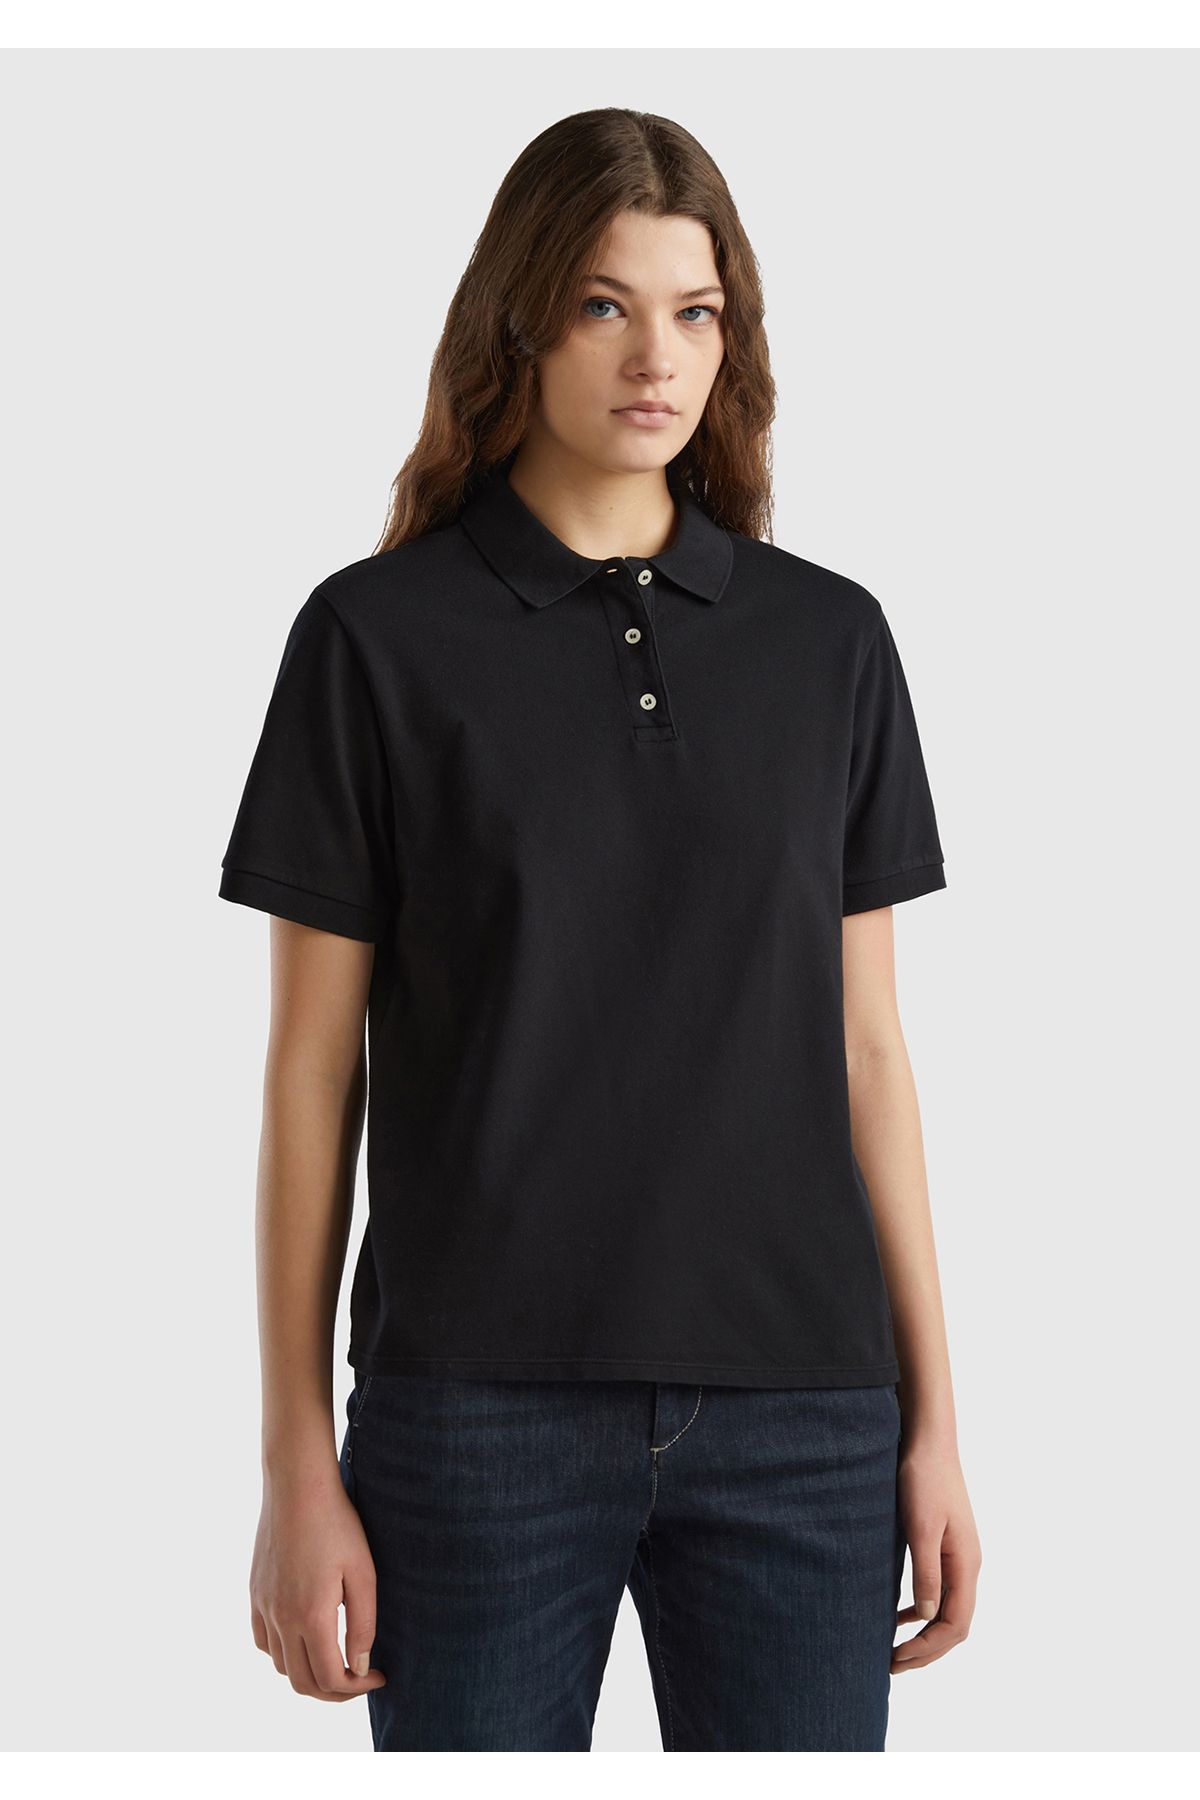 United Colors of Benetton Kadın Siyah Streç Pamuklu Sol Altı Logo Baskılı Polo T-Shirt